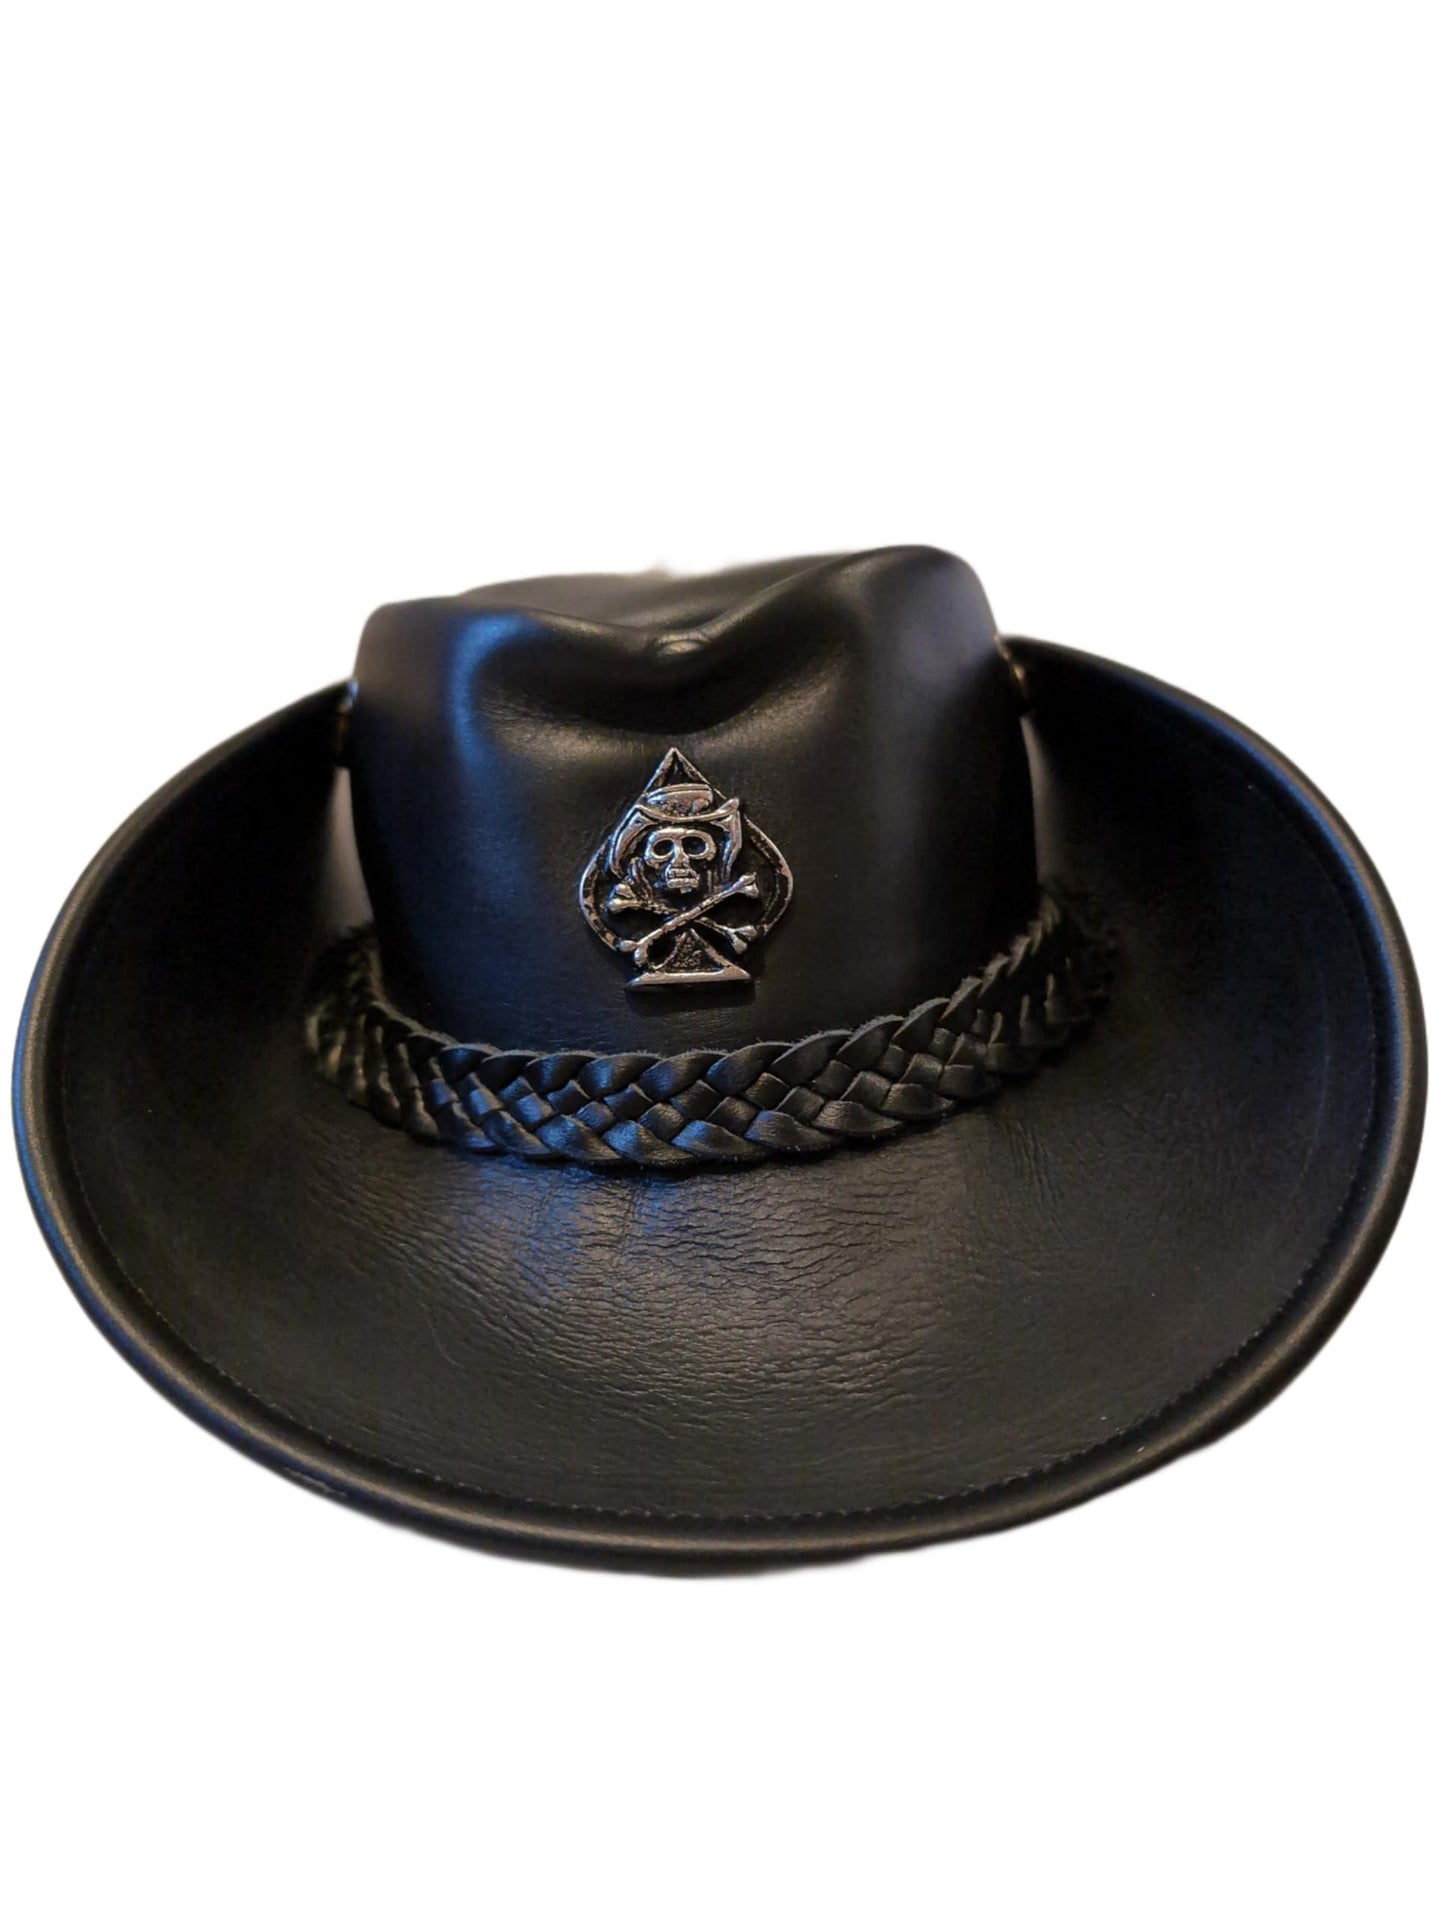 H15 Cowboyhut  - Lemmy Style -  Lederhut aus hochwertigem Rinderleder